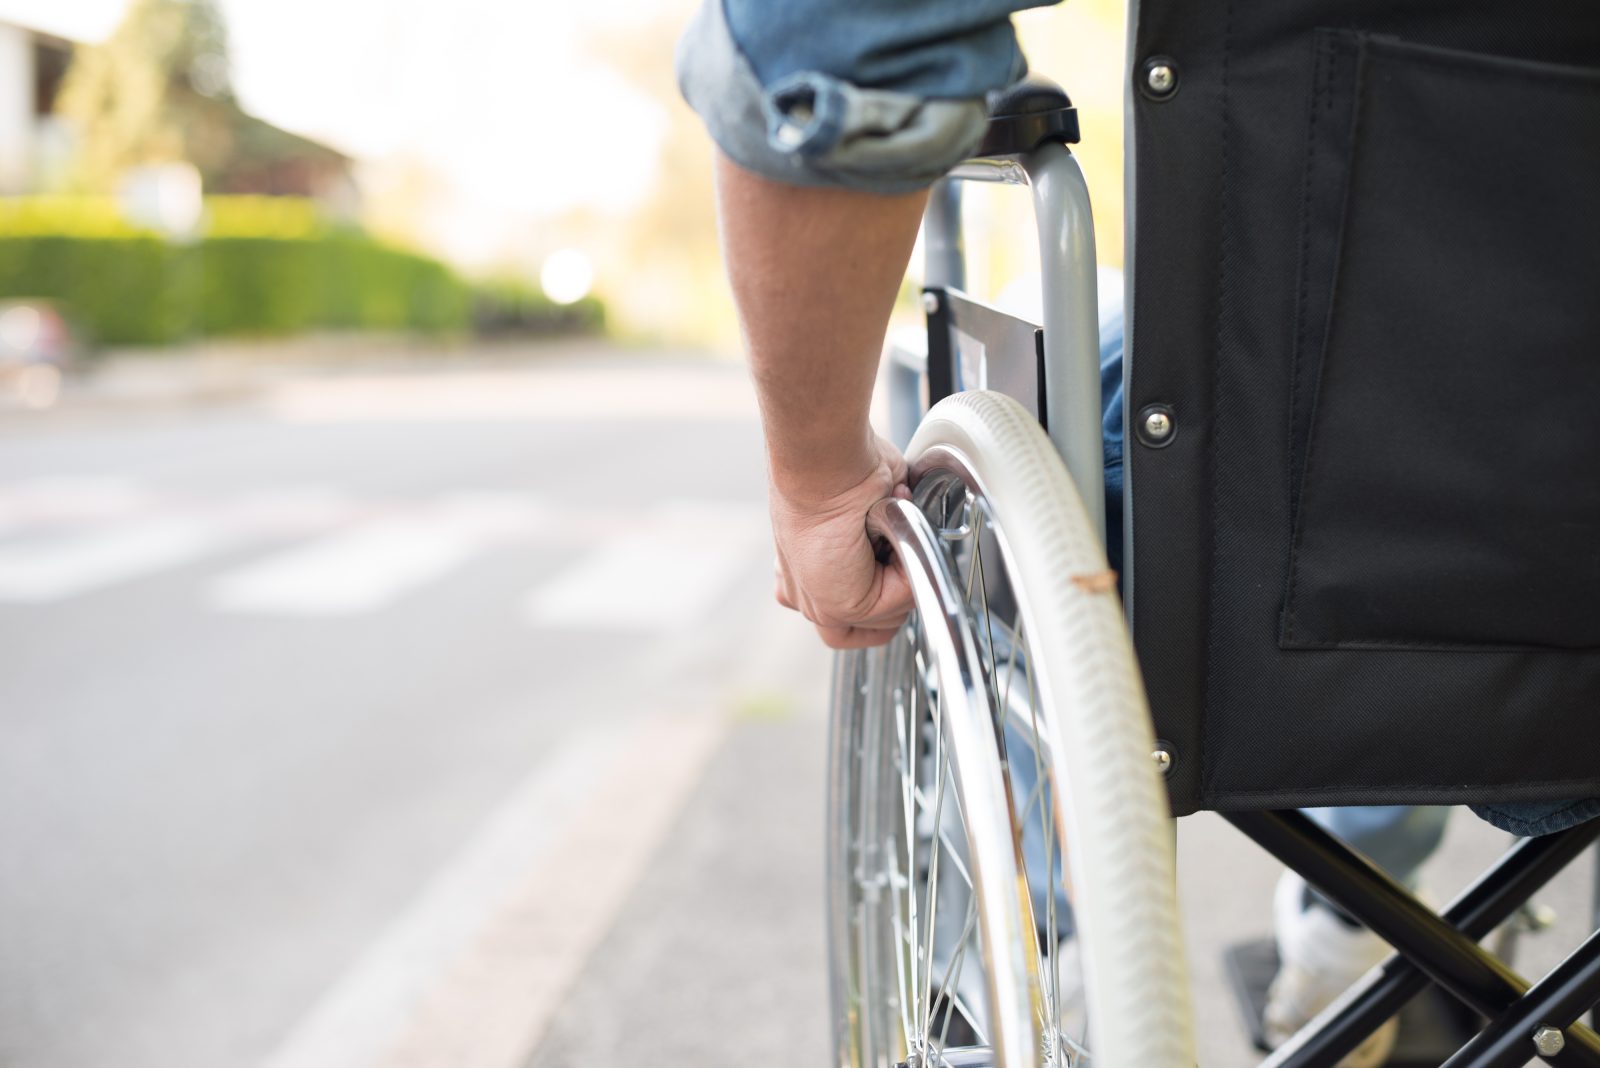 Le ROPHCQ veut mieux cibler les besoins des personnes handicapées